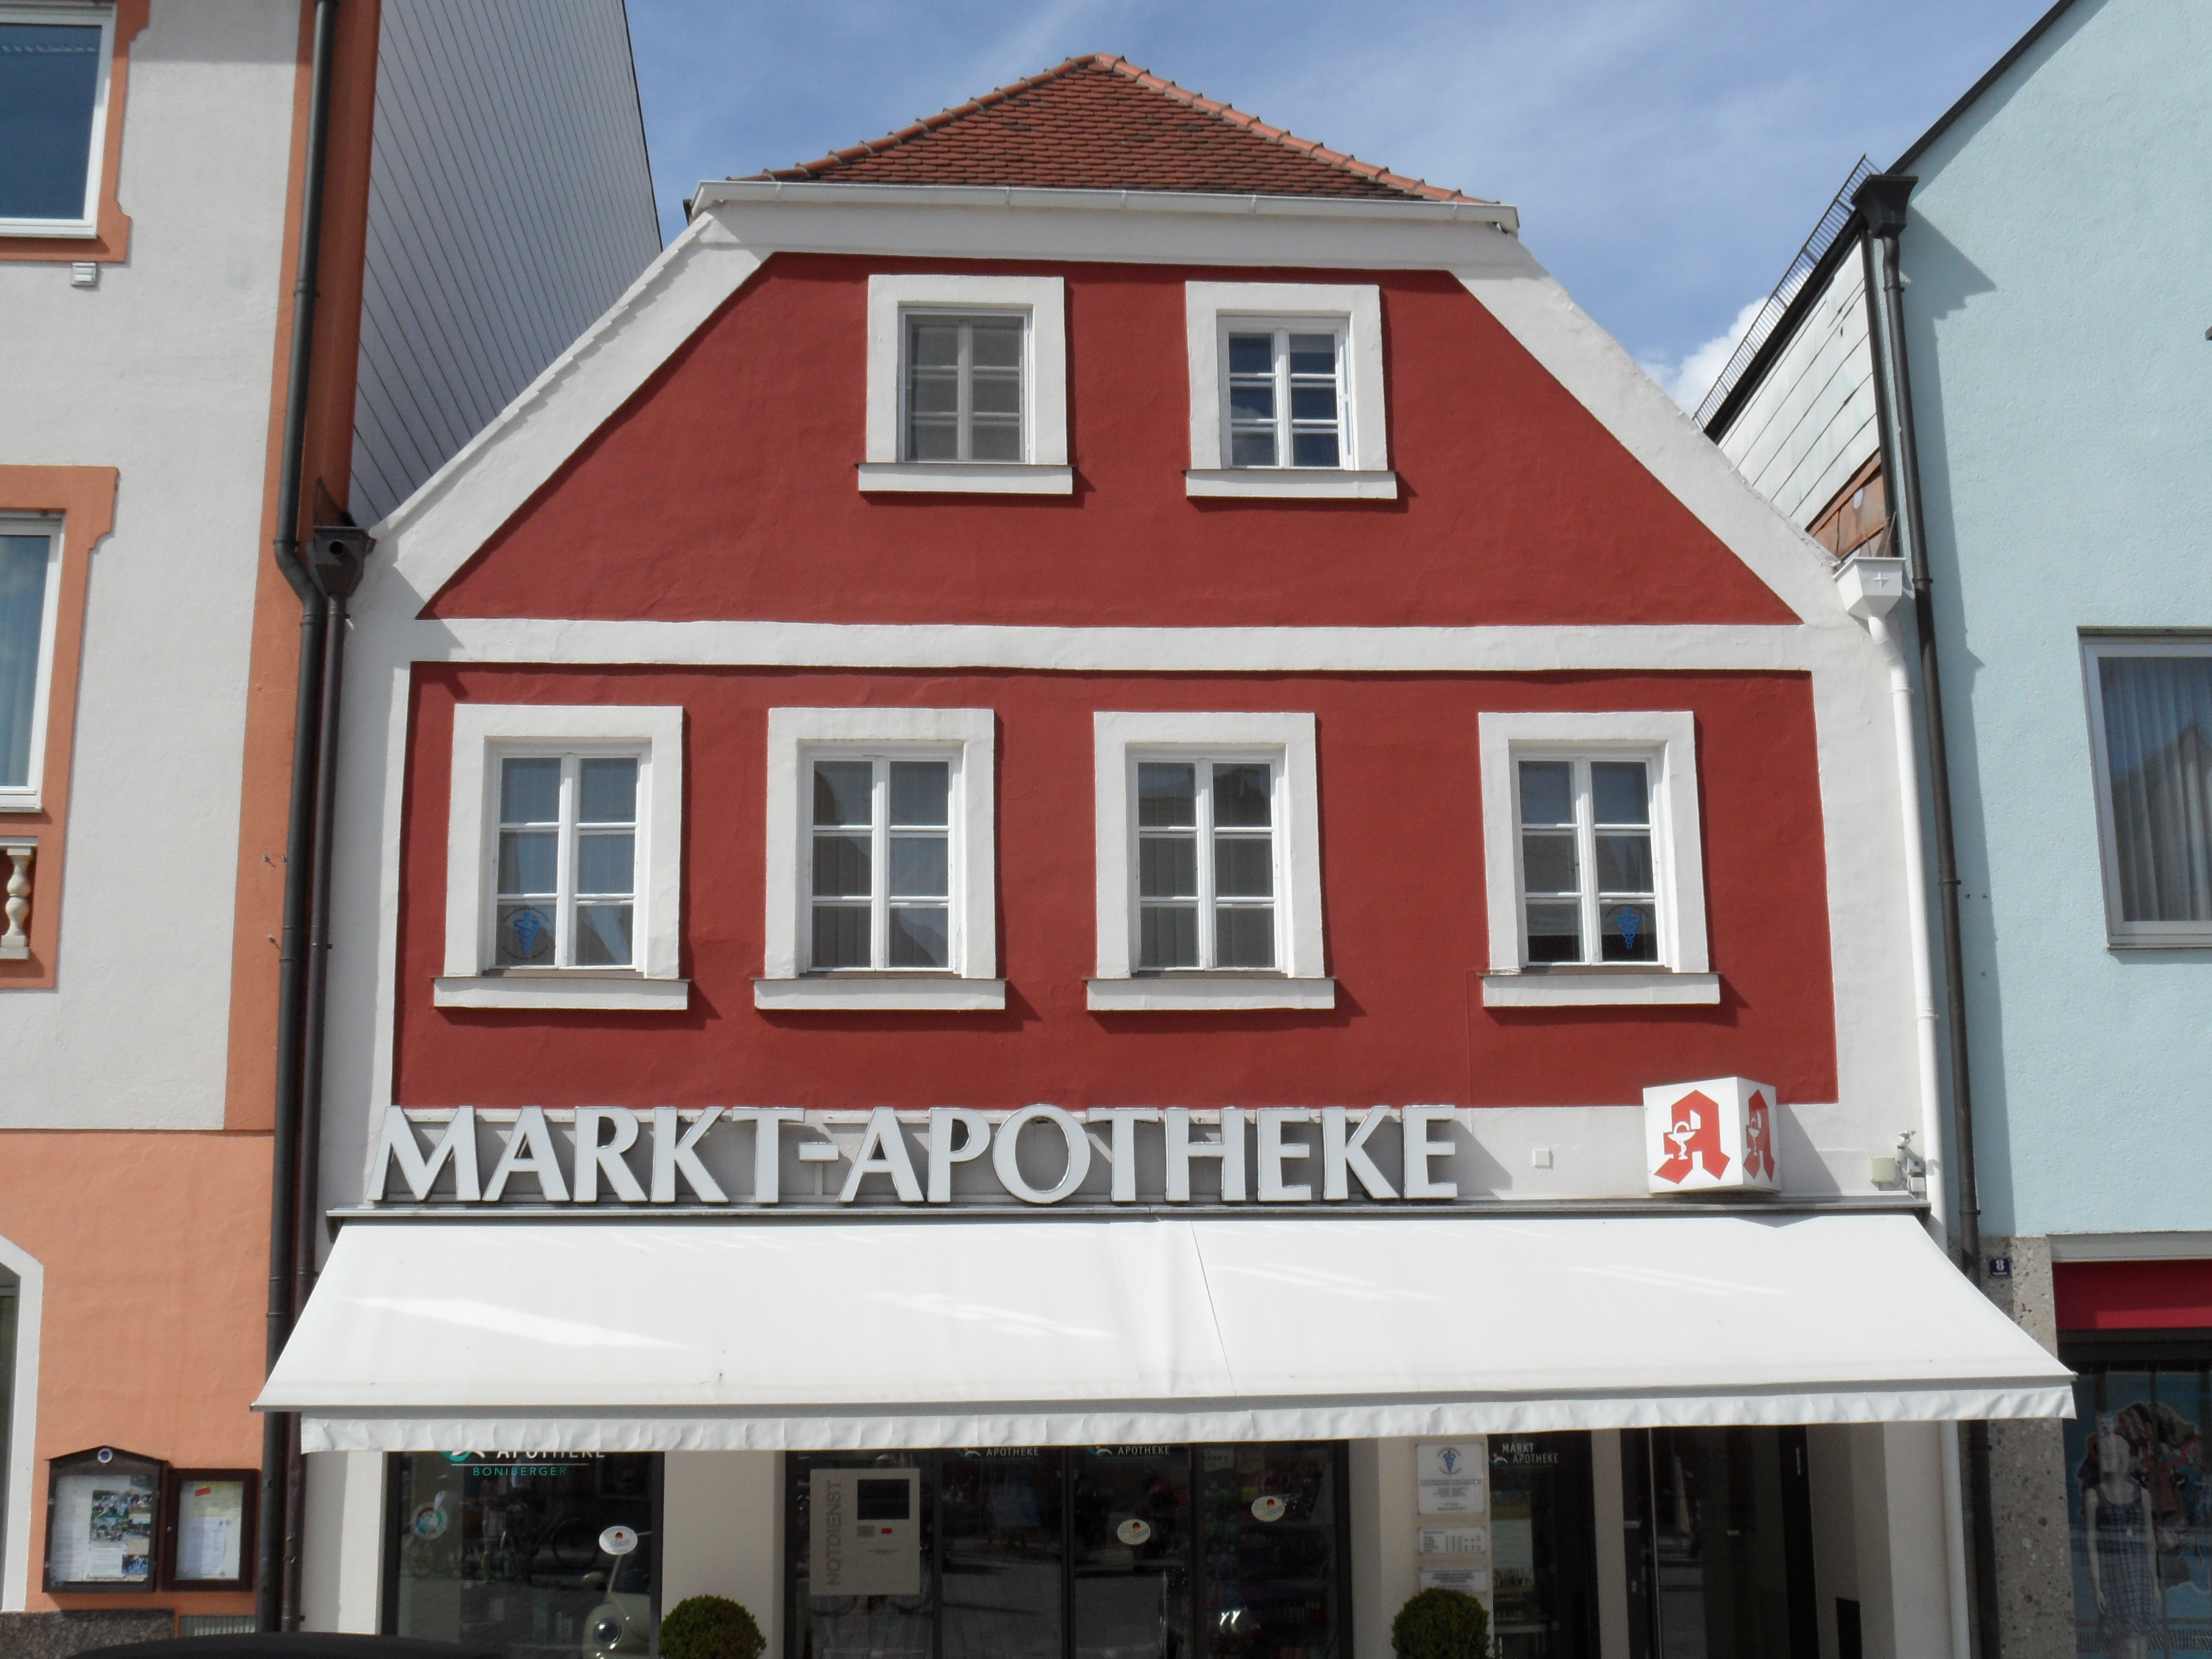 Bild 1 Markt-Apotheke in Pfaffenhofen a.d.Ilm